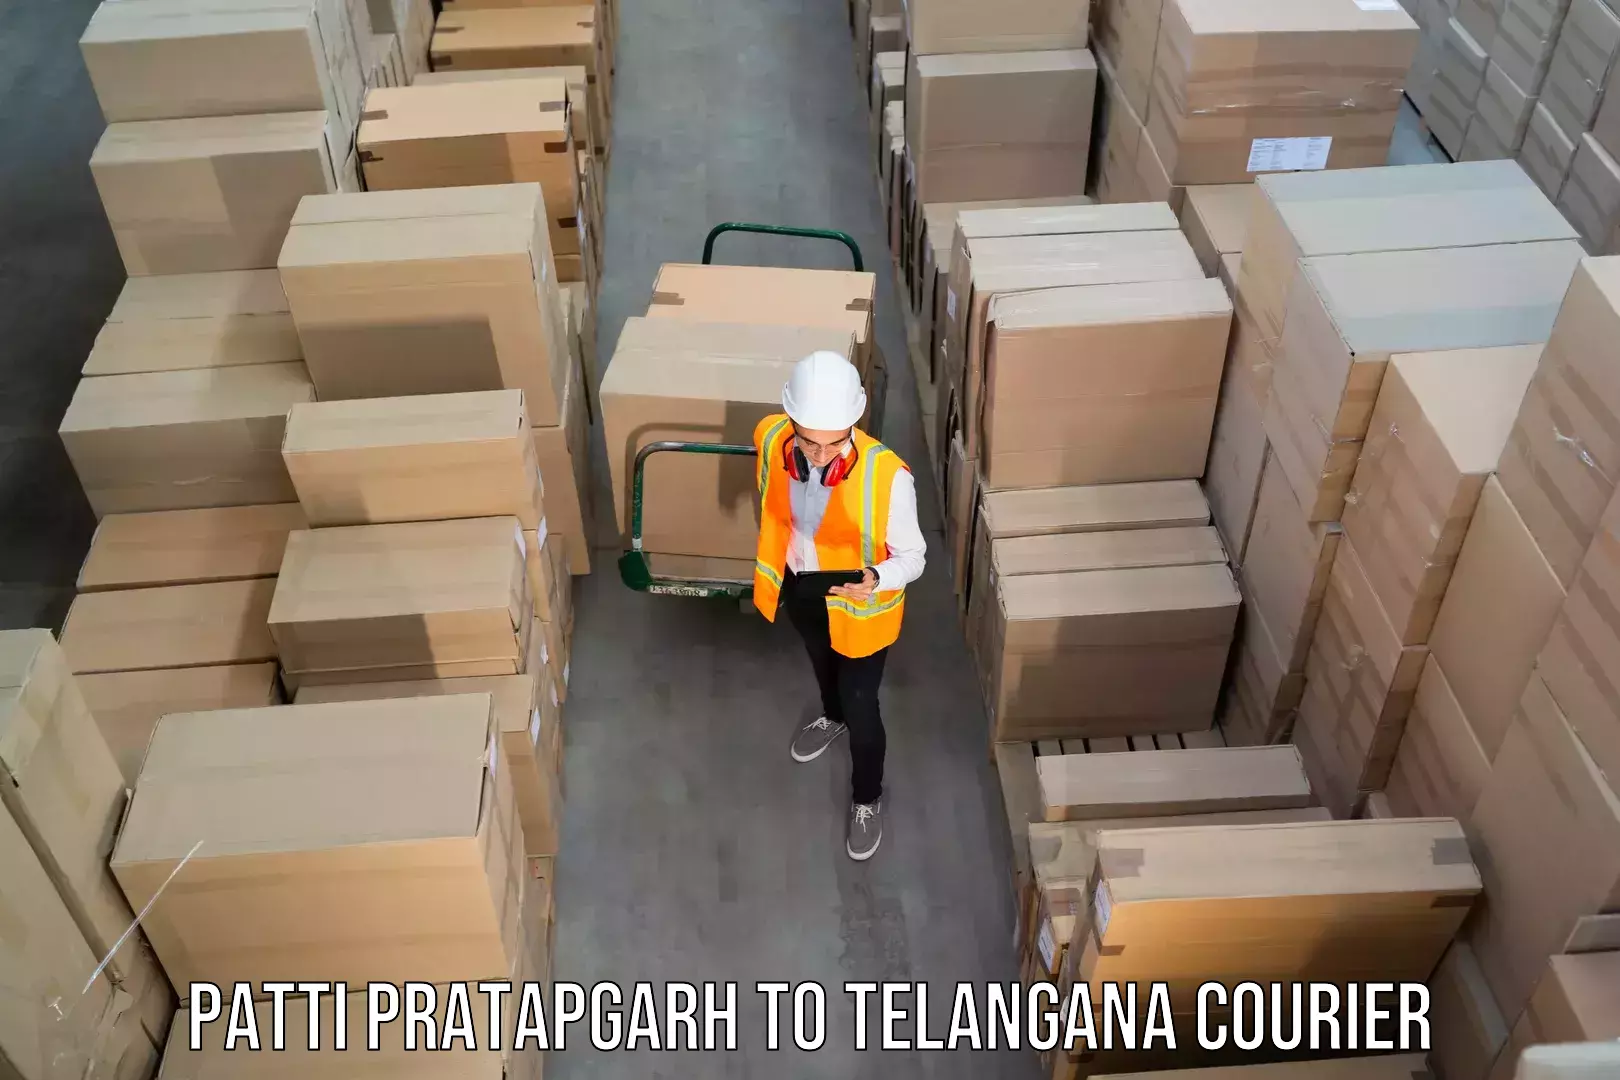 On-demand shipping options Patti Pratapgarh to Suryapet